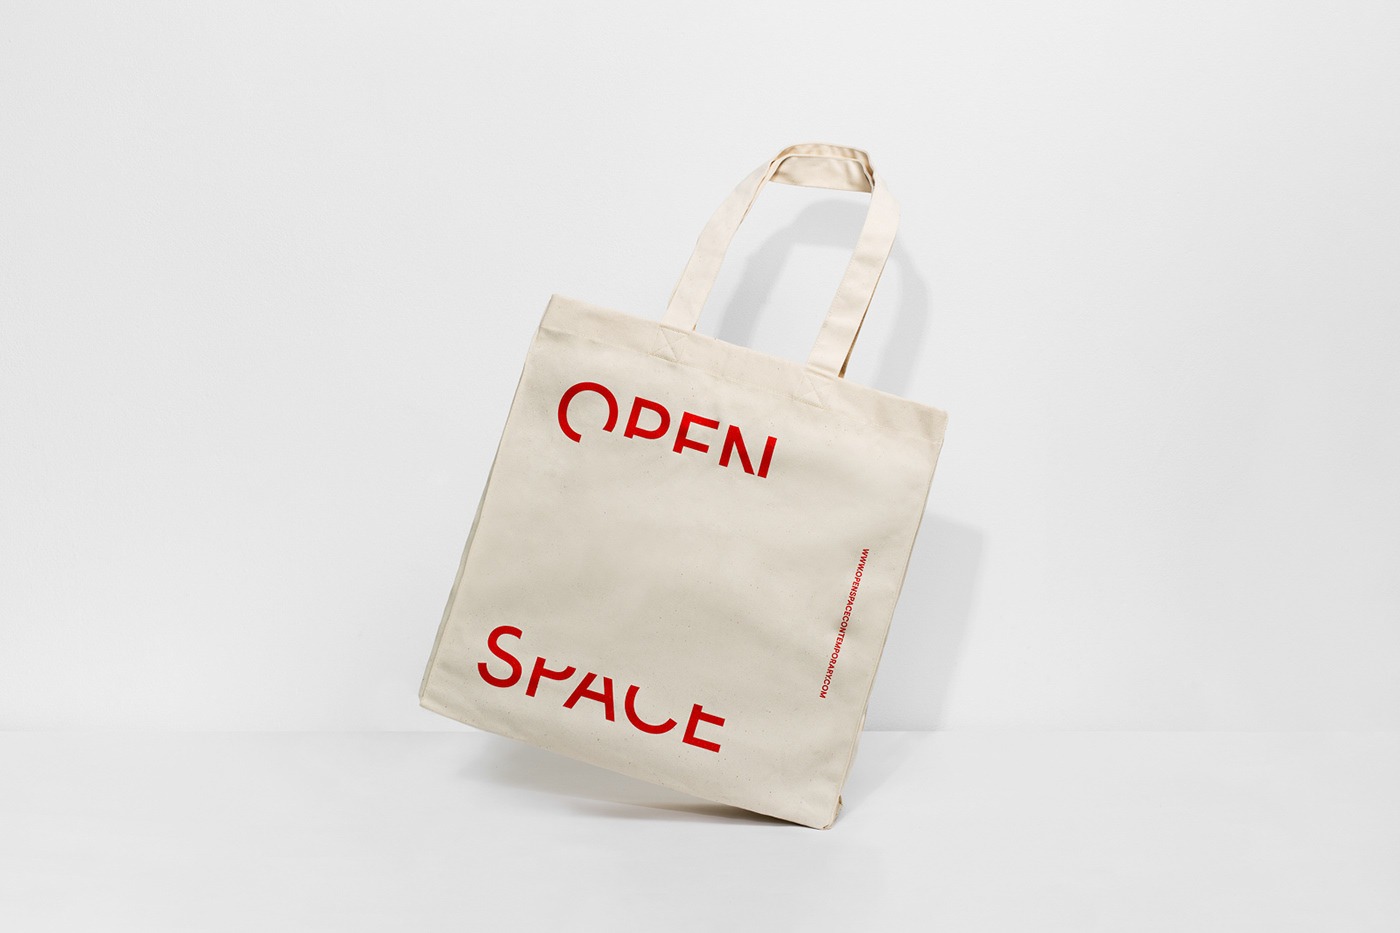 艺术展览组织Open Space品牌视觉设计